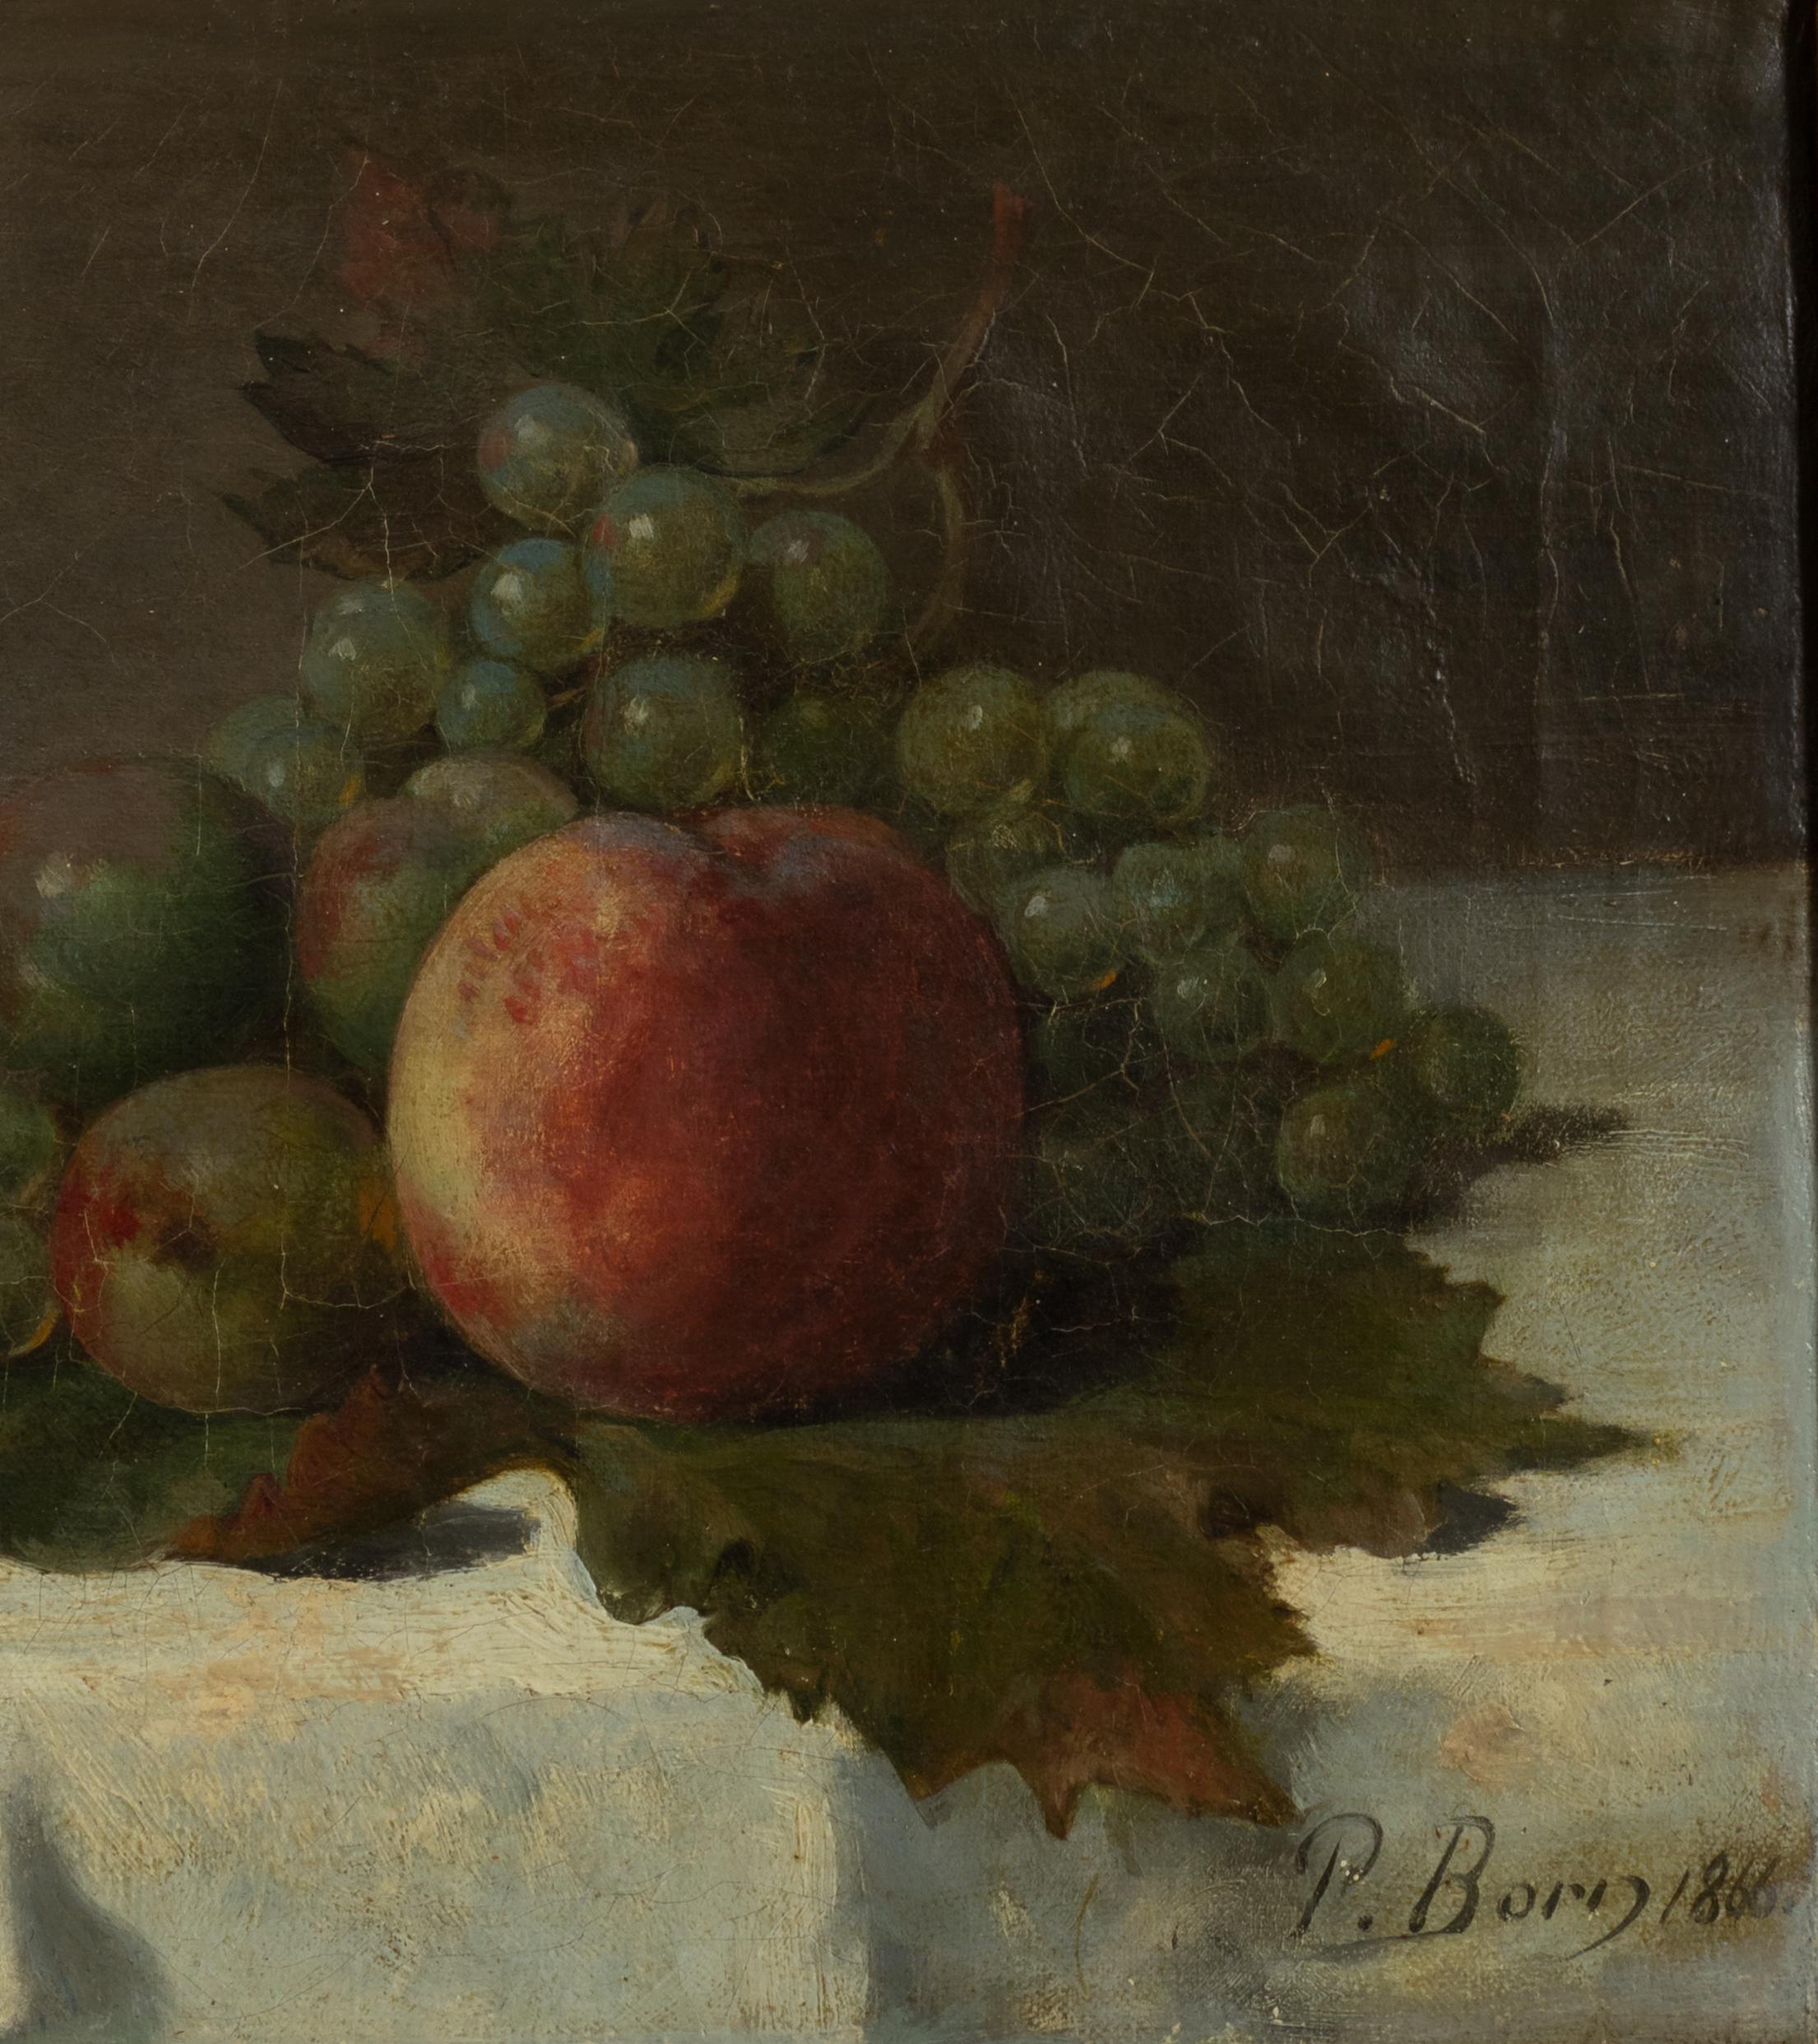 Ein Stillleben aus dem 19. Jahrhundert in Öl auf Leinwand. 
Eine auf 1866 datierte Darstellung von Äpfeln und Trauben, die auf einem Weinblatt liegen.
Unterschrift 